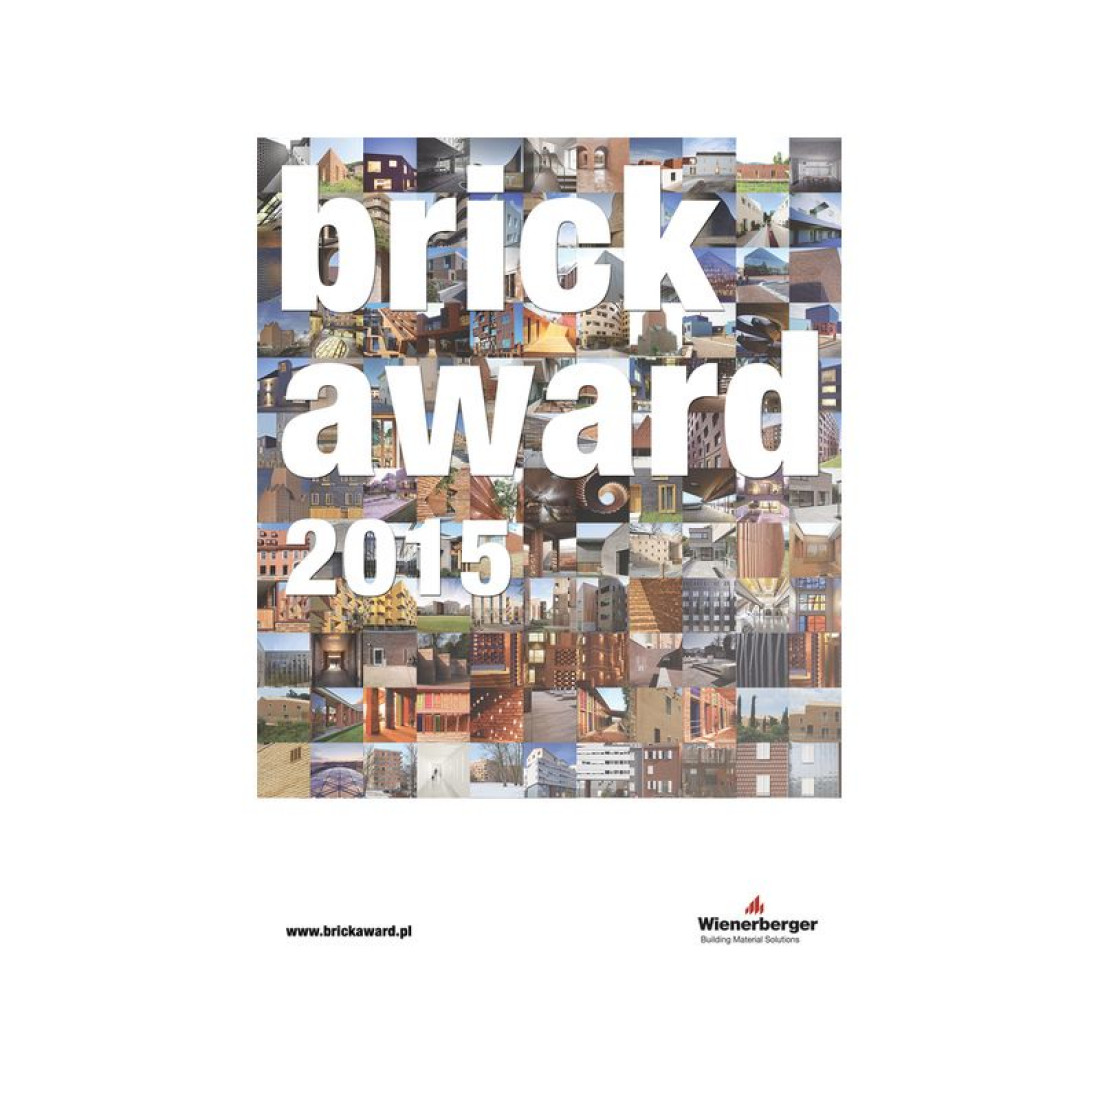 16.02.2015 upływa termin zgłaszania prac do Brick Award informuje Wienerberger